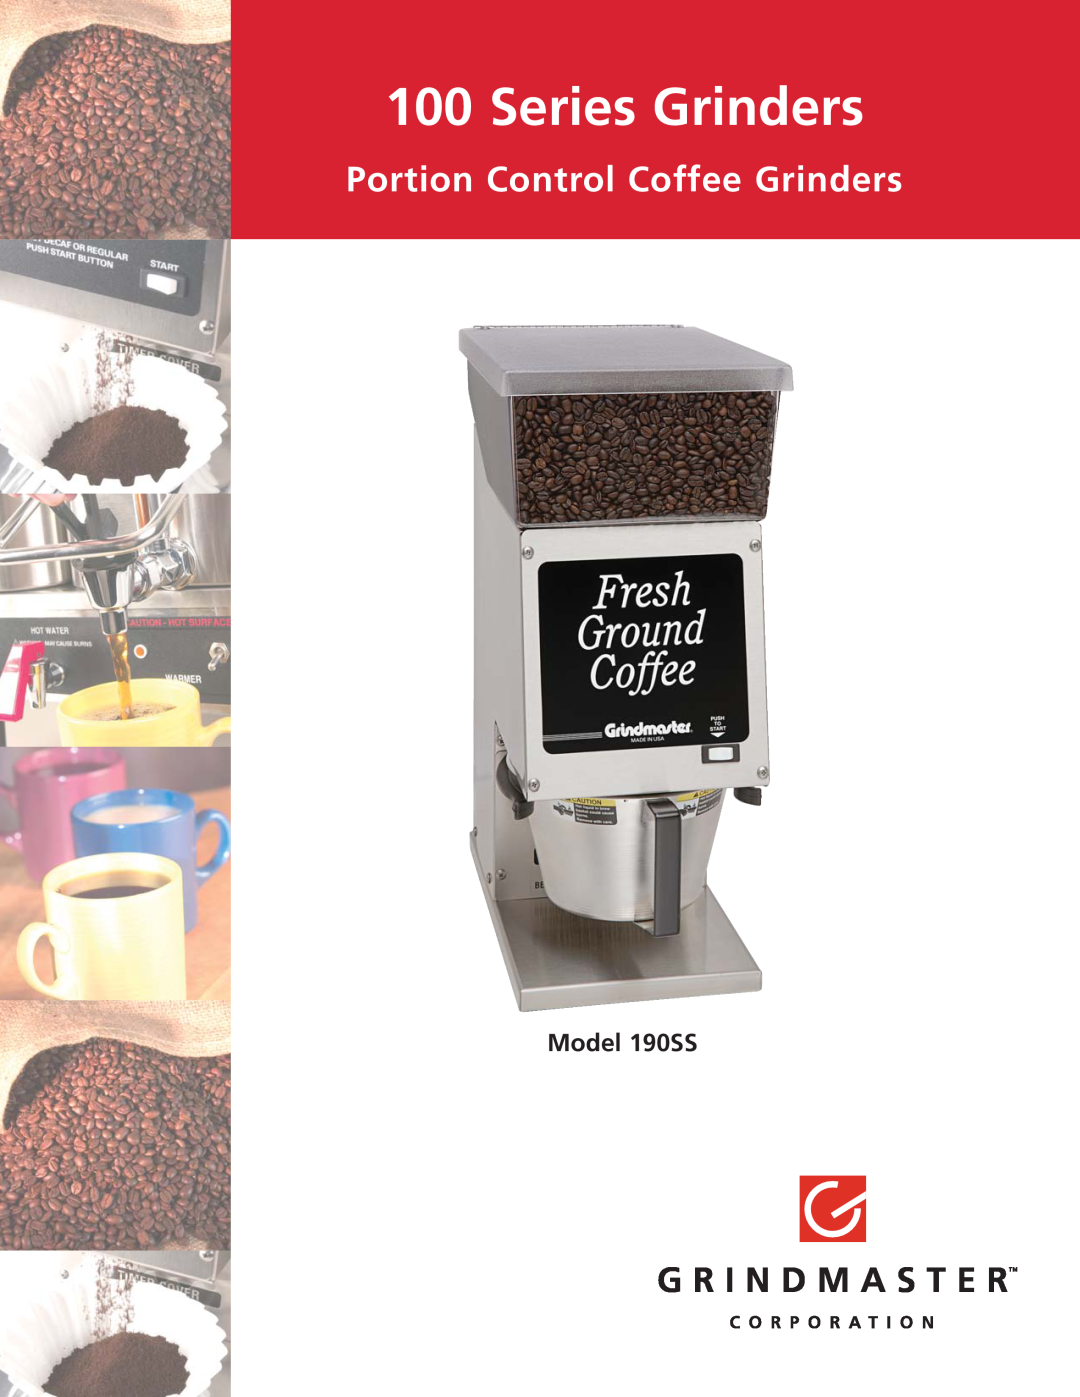 Grindmaster manual Series Grinders, Portion Control Coffee Grinders, Model 190SS 